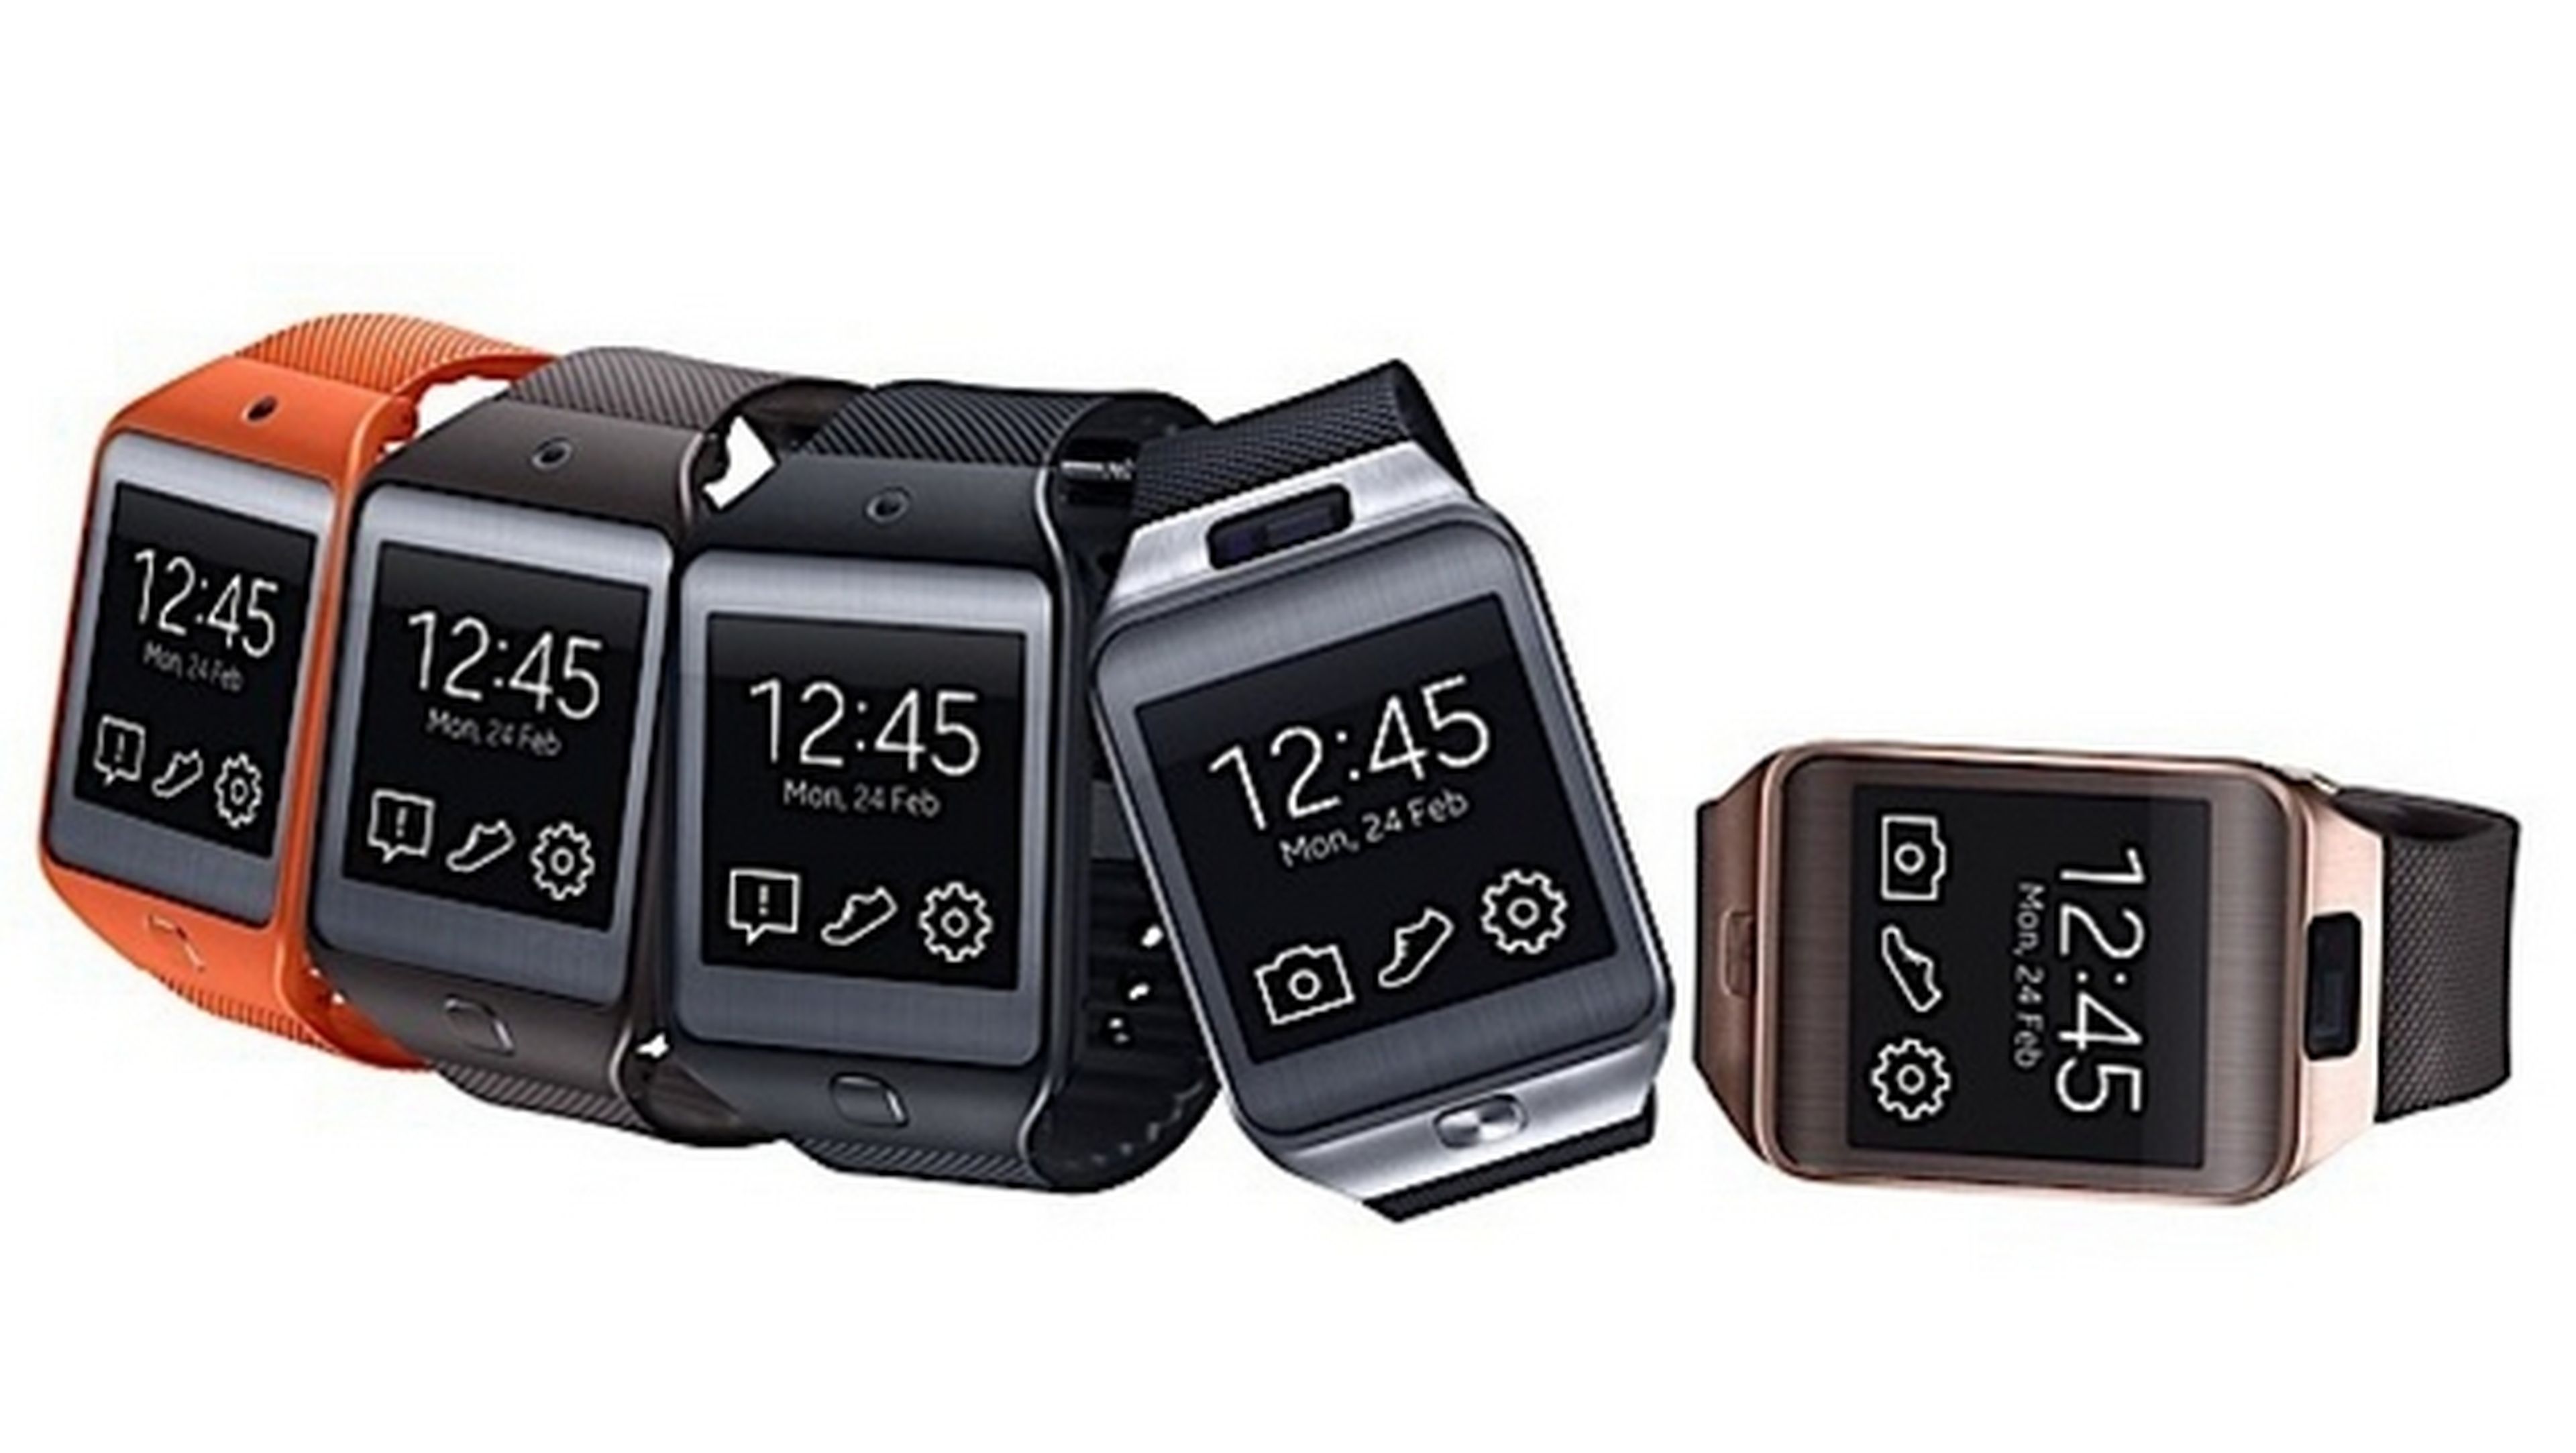 Sansung presenta sus smartwatches o relojes inteligentes Samsung Gear 2 Neo con el sistema operativo Tizen